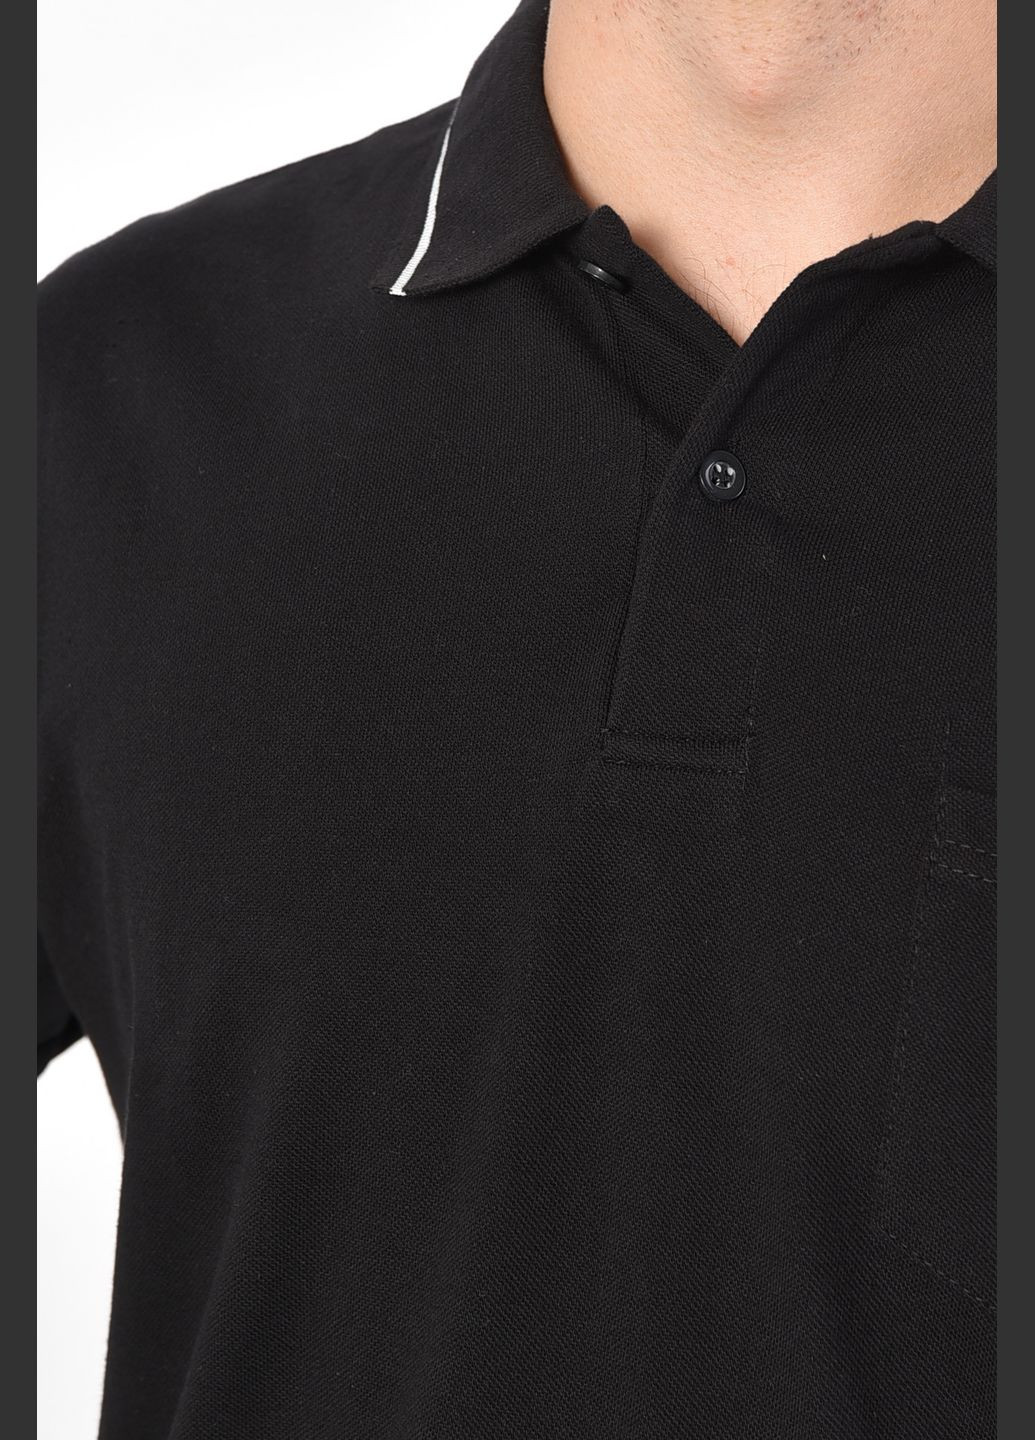 Черная футболка поло мужская черного цвета Let's Shop